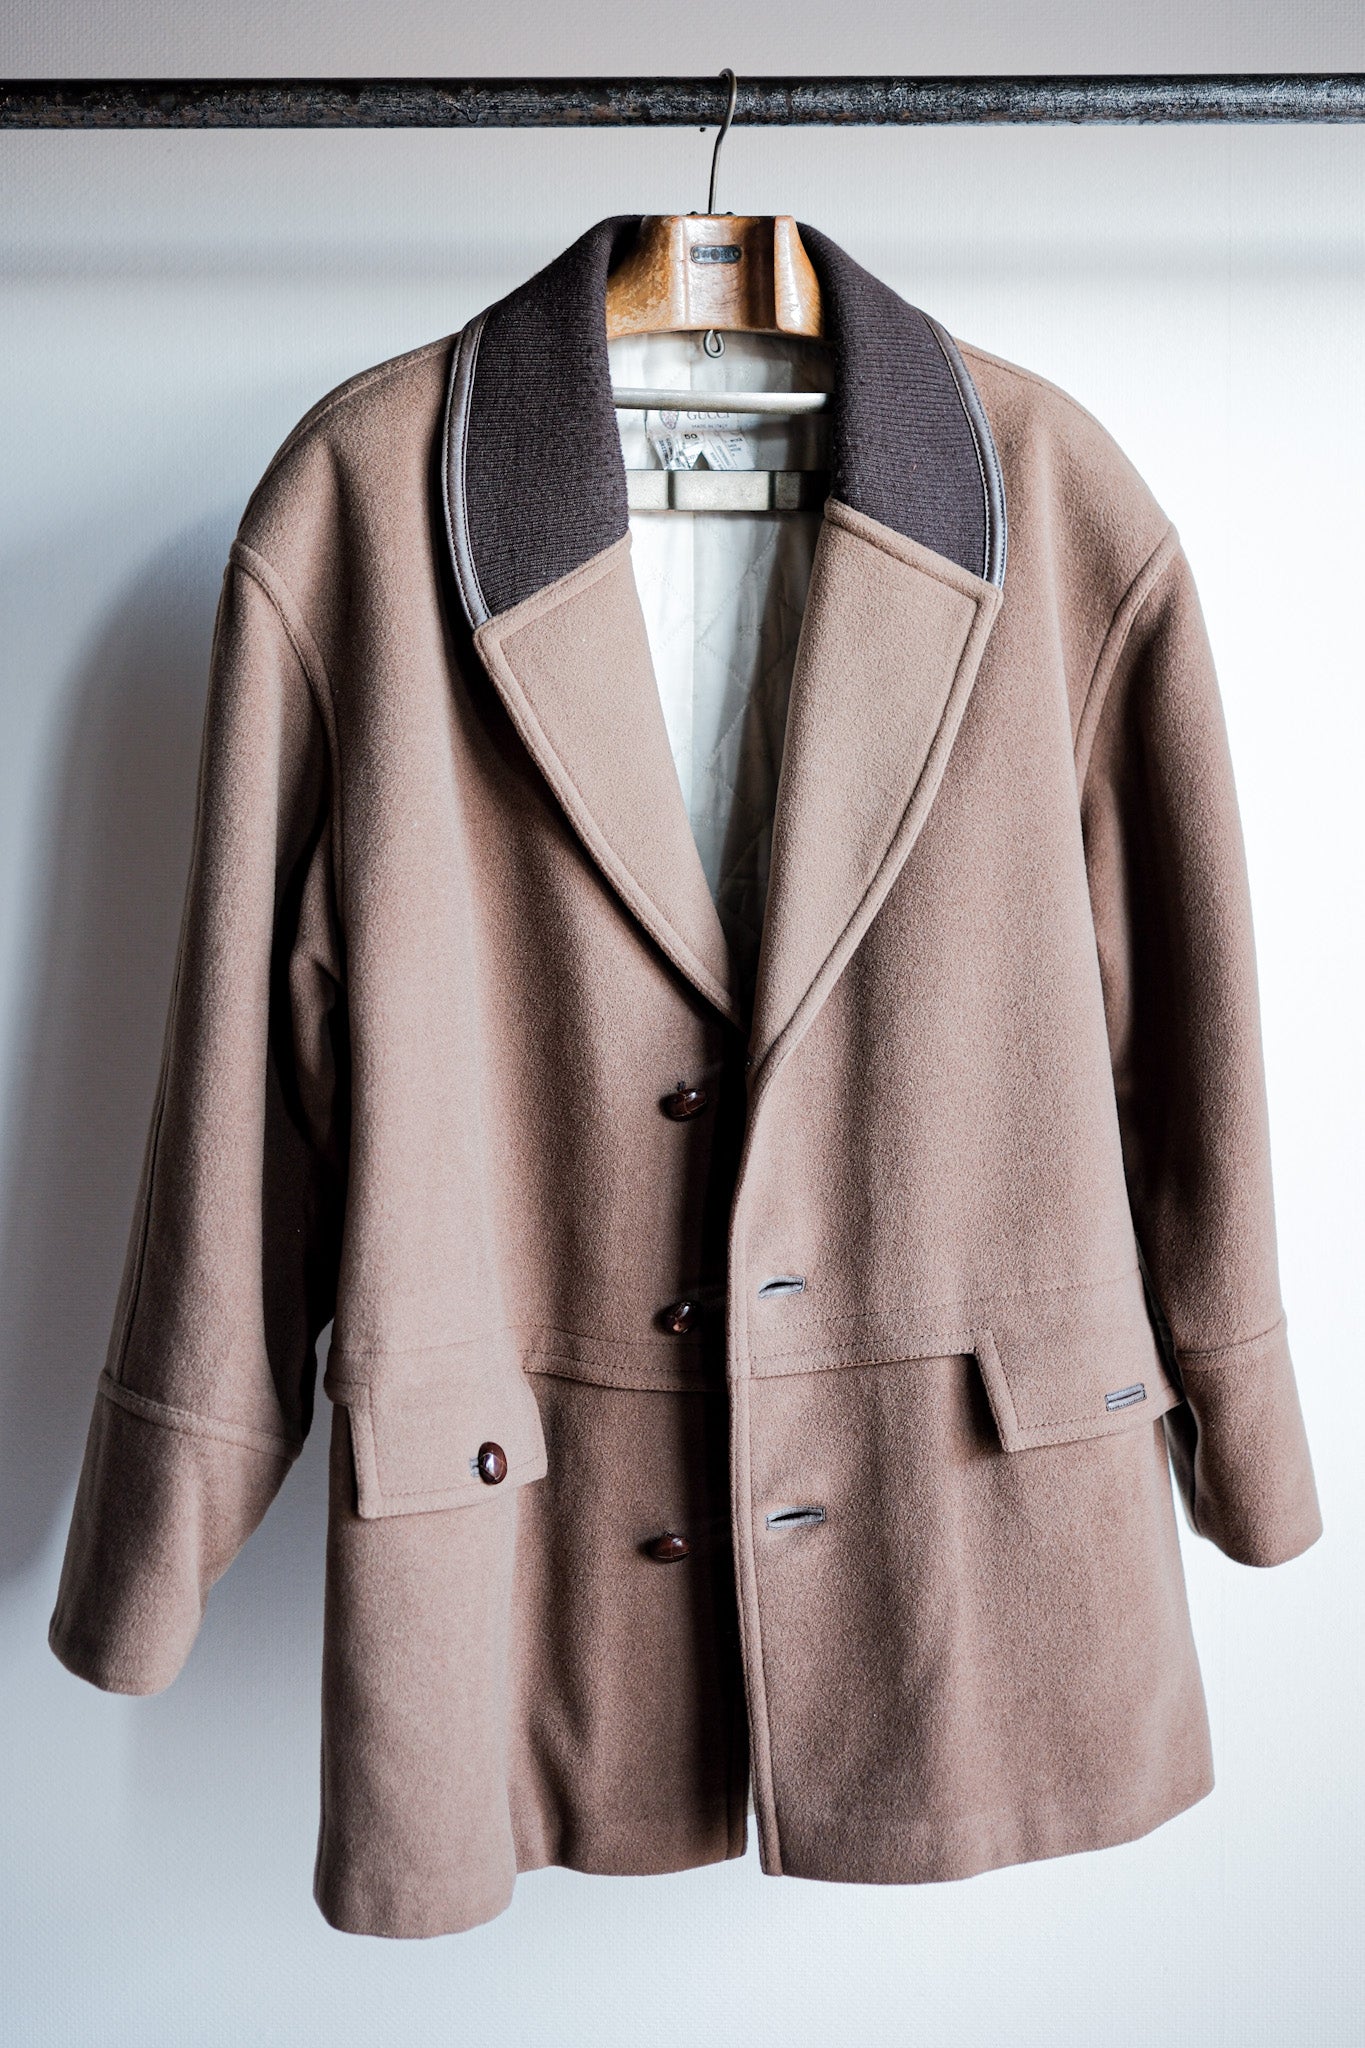 [~ 80's] เสื้อแจ็คเก็ตผ้าคลุมไหล่ผ้าคลุมไหล่ gucci เก่าขนาด 50